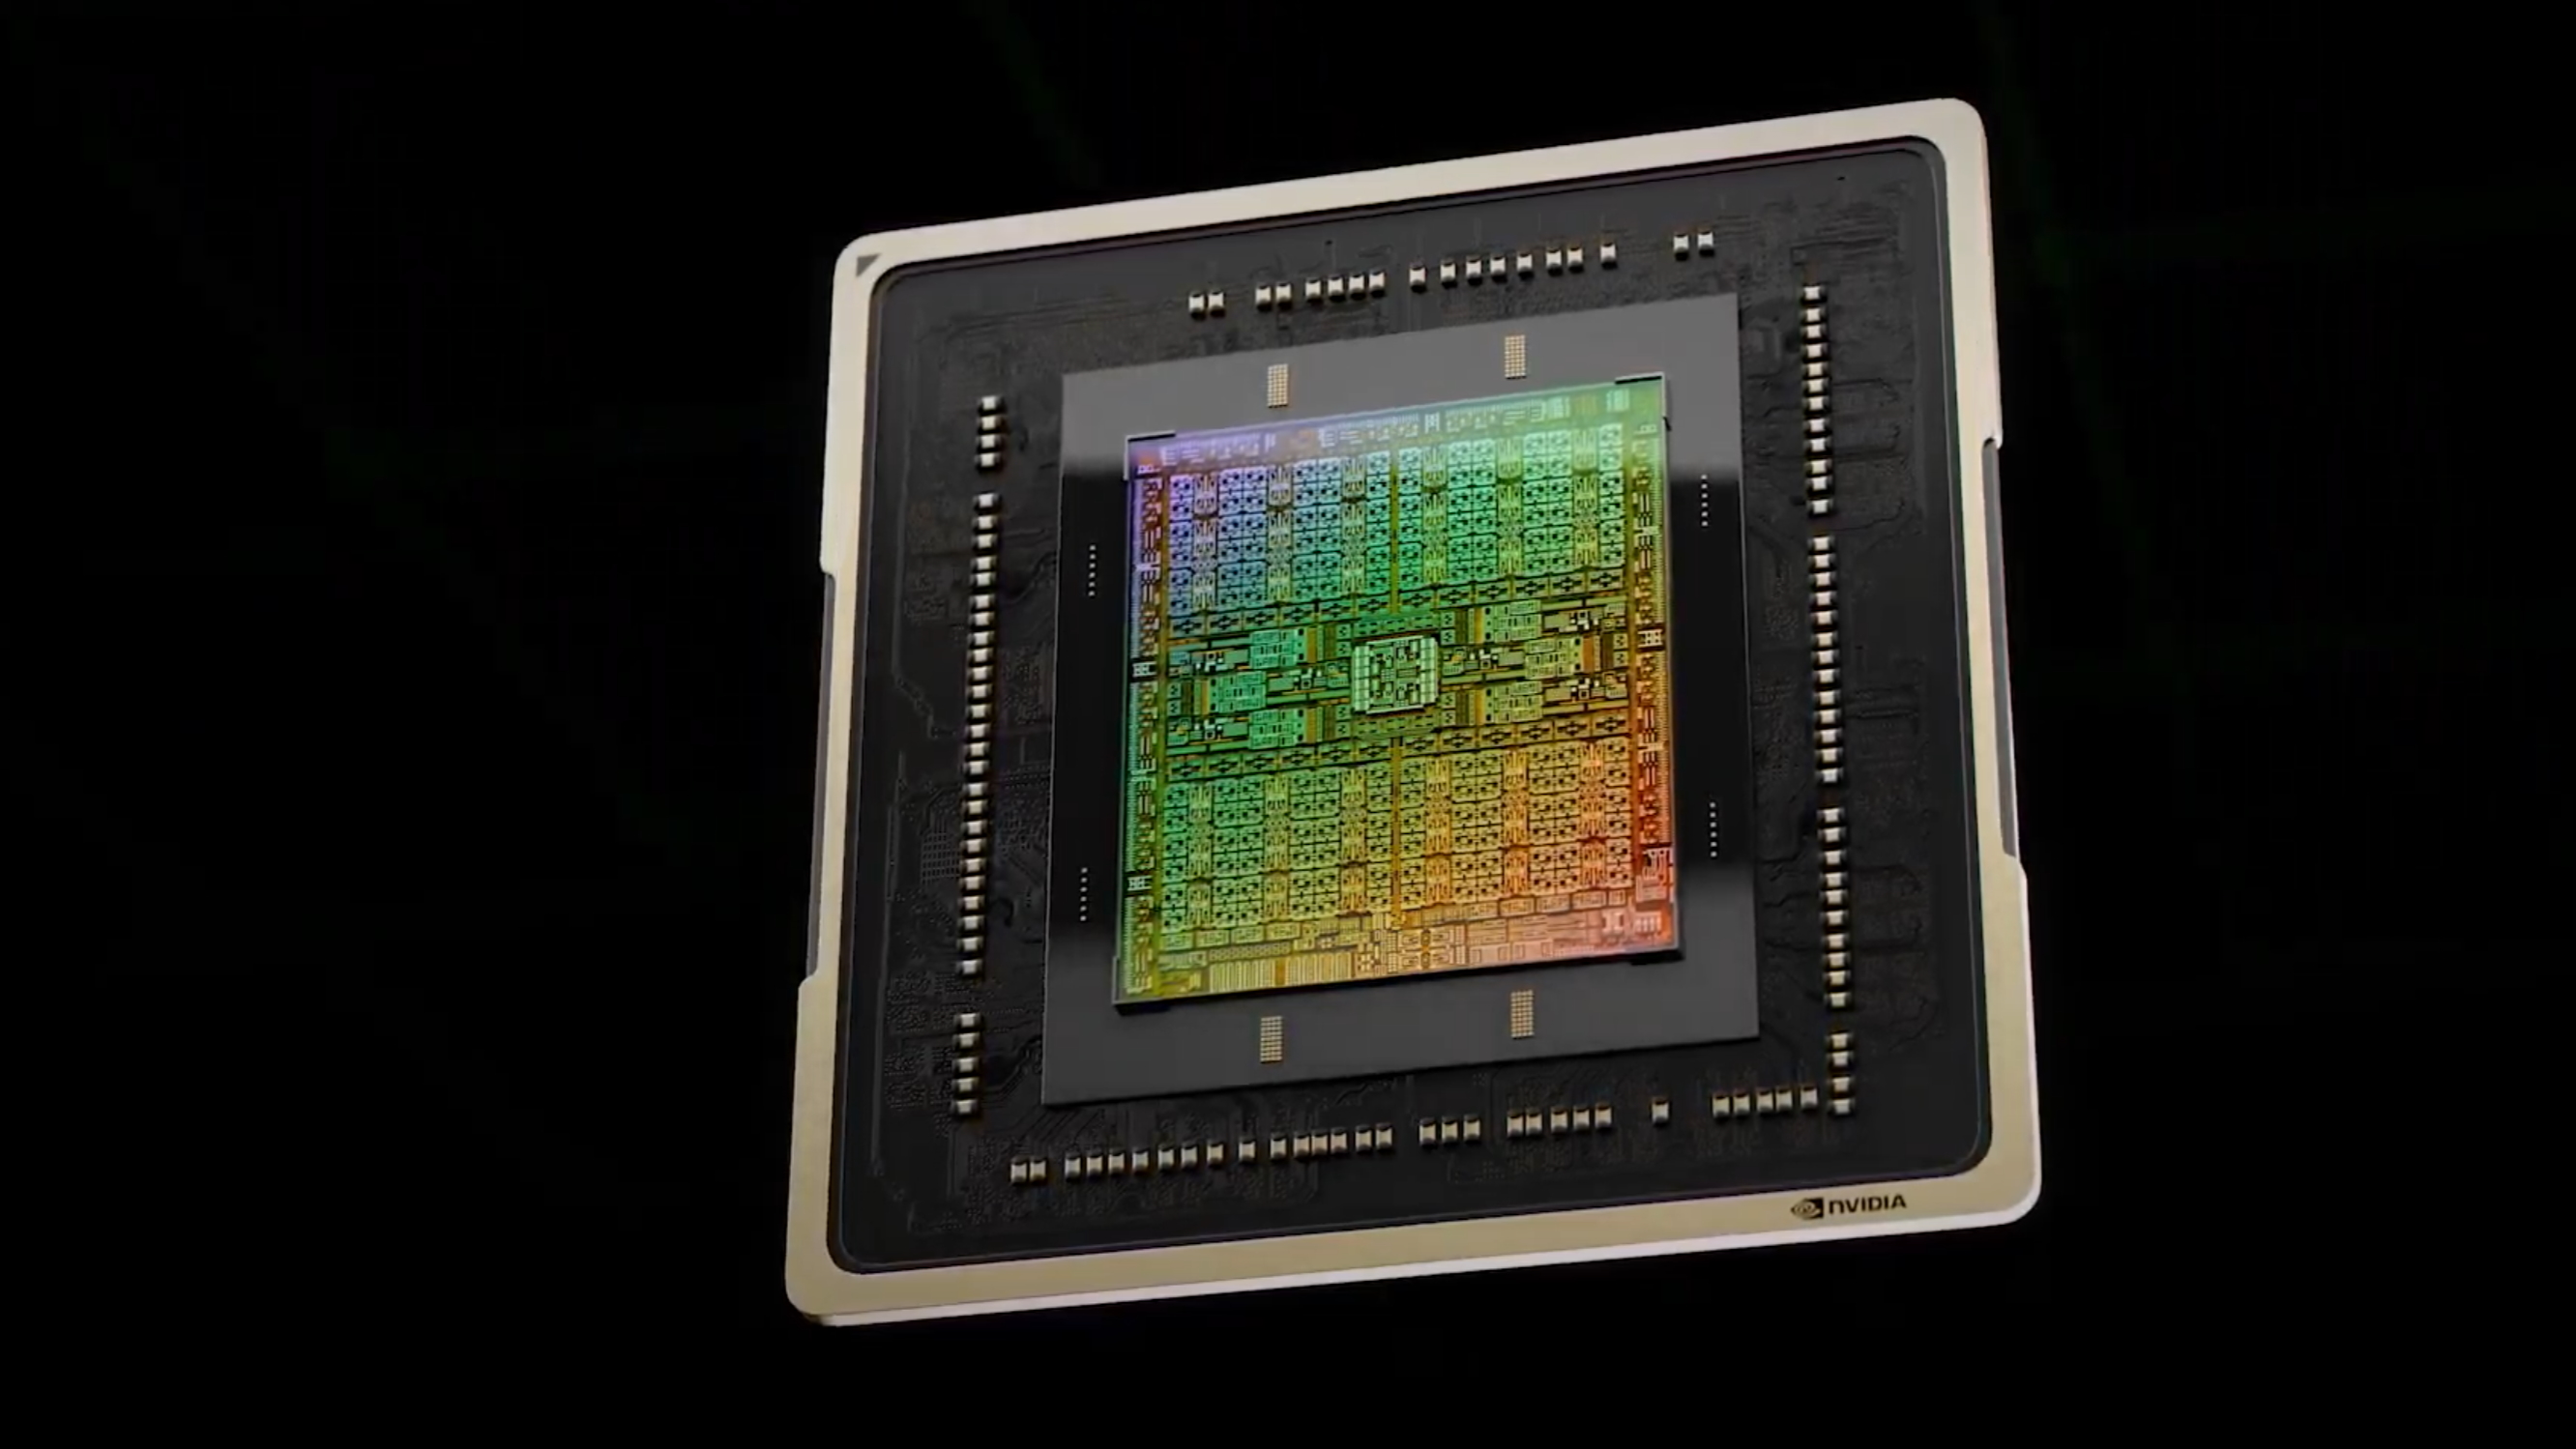 RTX 4080 SUPER Leak: Wait for Nvidia's THREE new GPUs